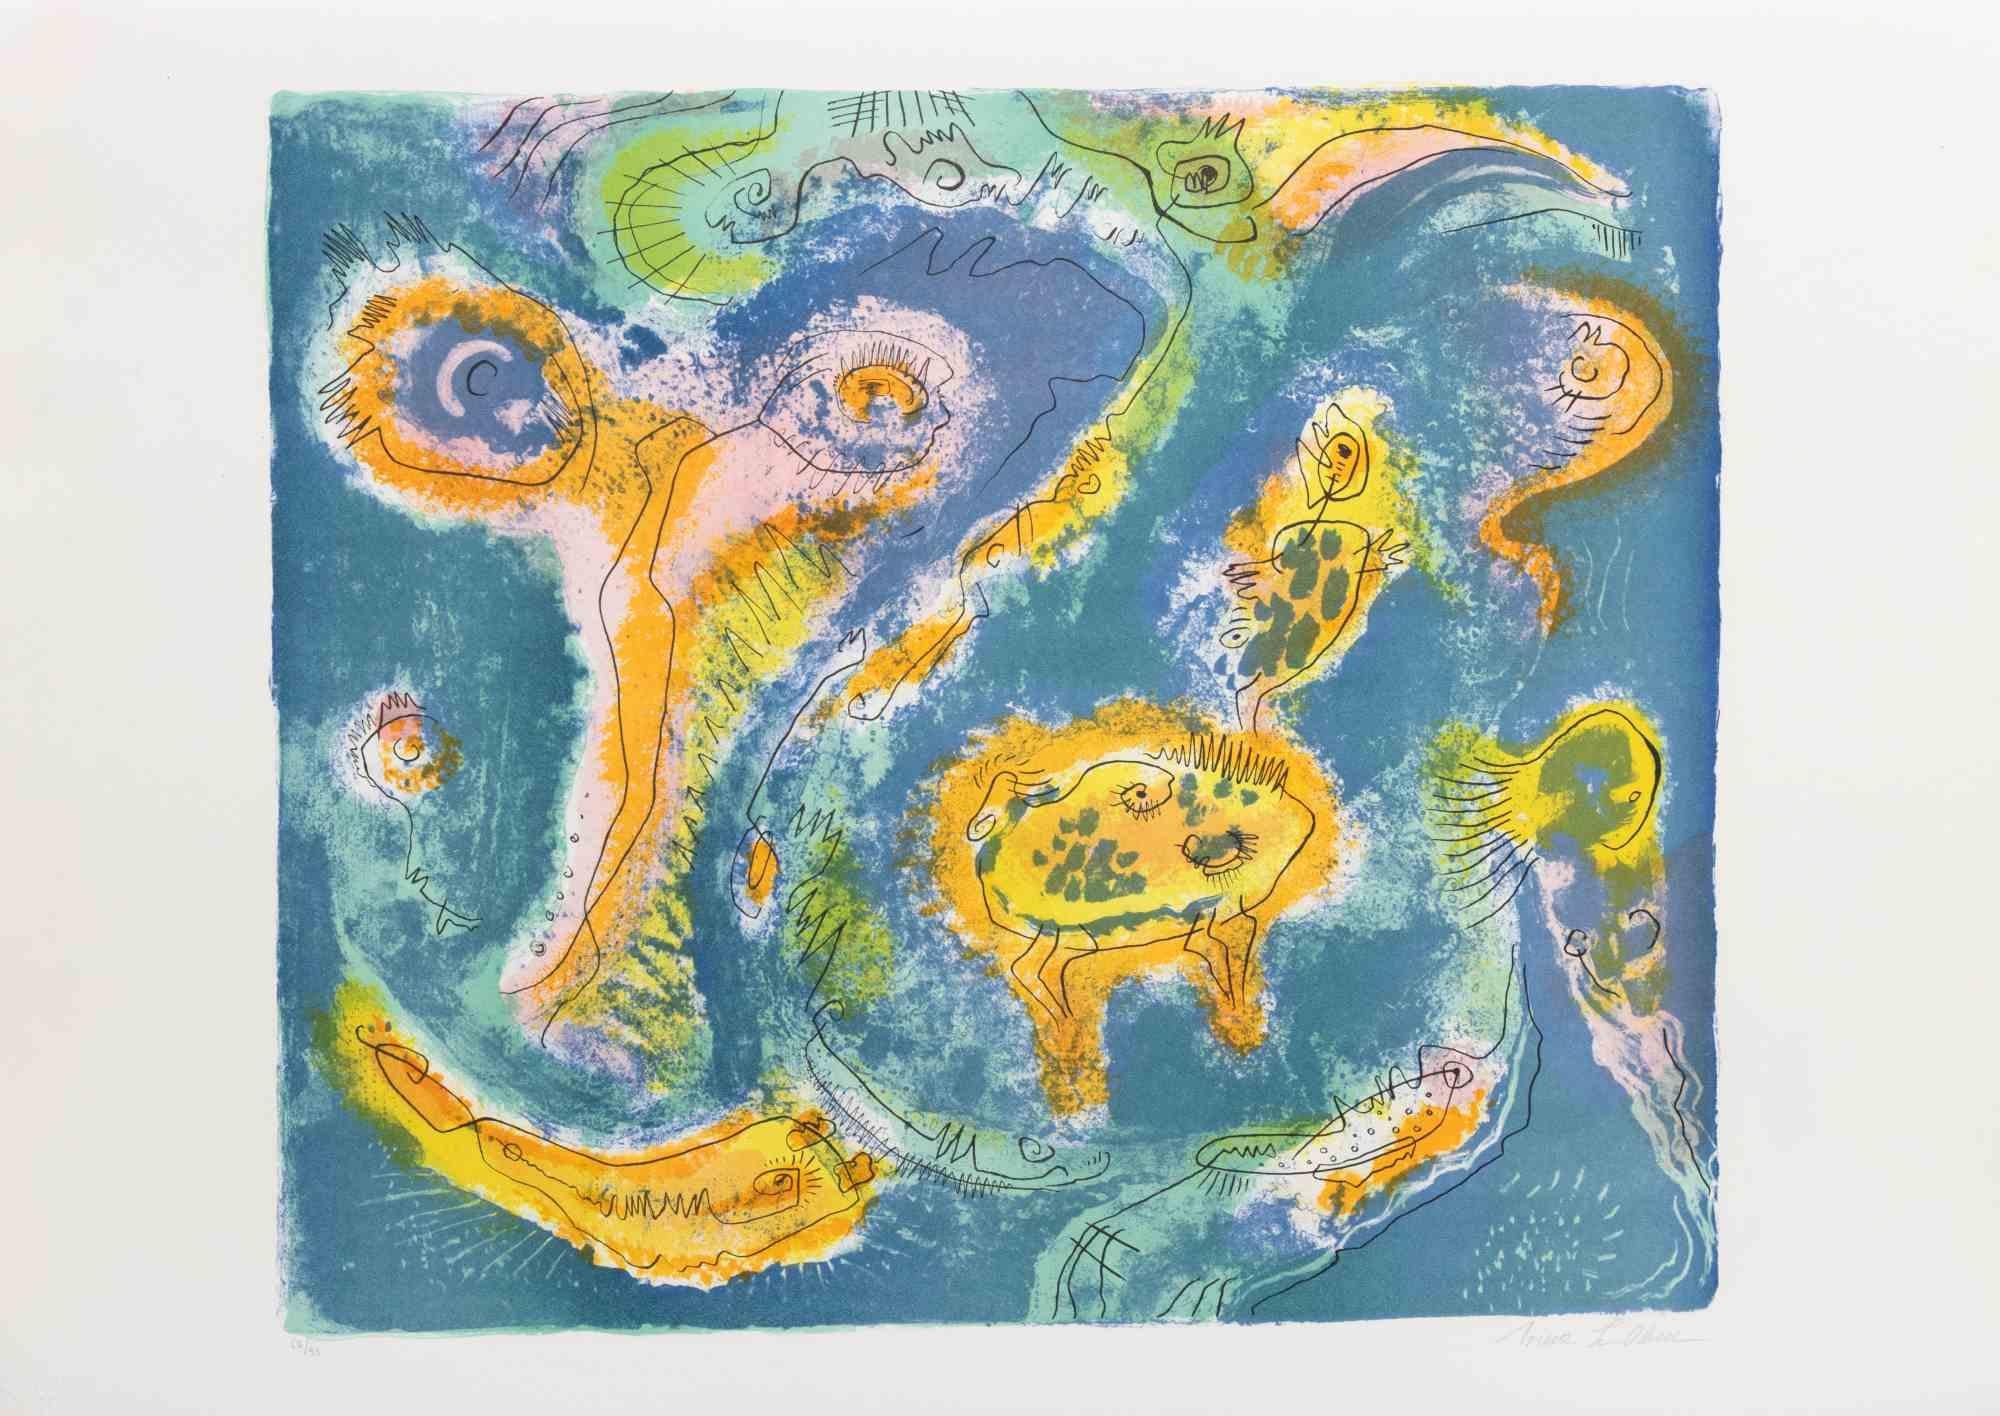 L'étang est une œuvre d'art contemporain réalisée par Le Pond dans les années 1970.

Lithographie en couleurs mélangées.

Signé à la main dans la marge inférieure.

Numéroté dans la marge inférieure.

Édition de 67/95.